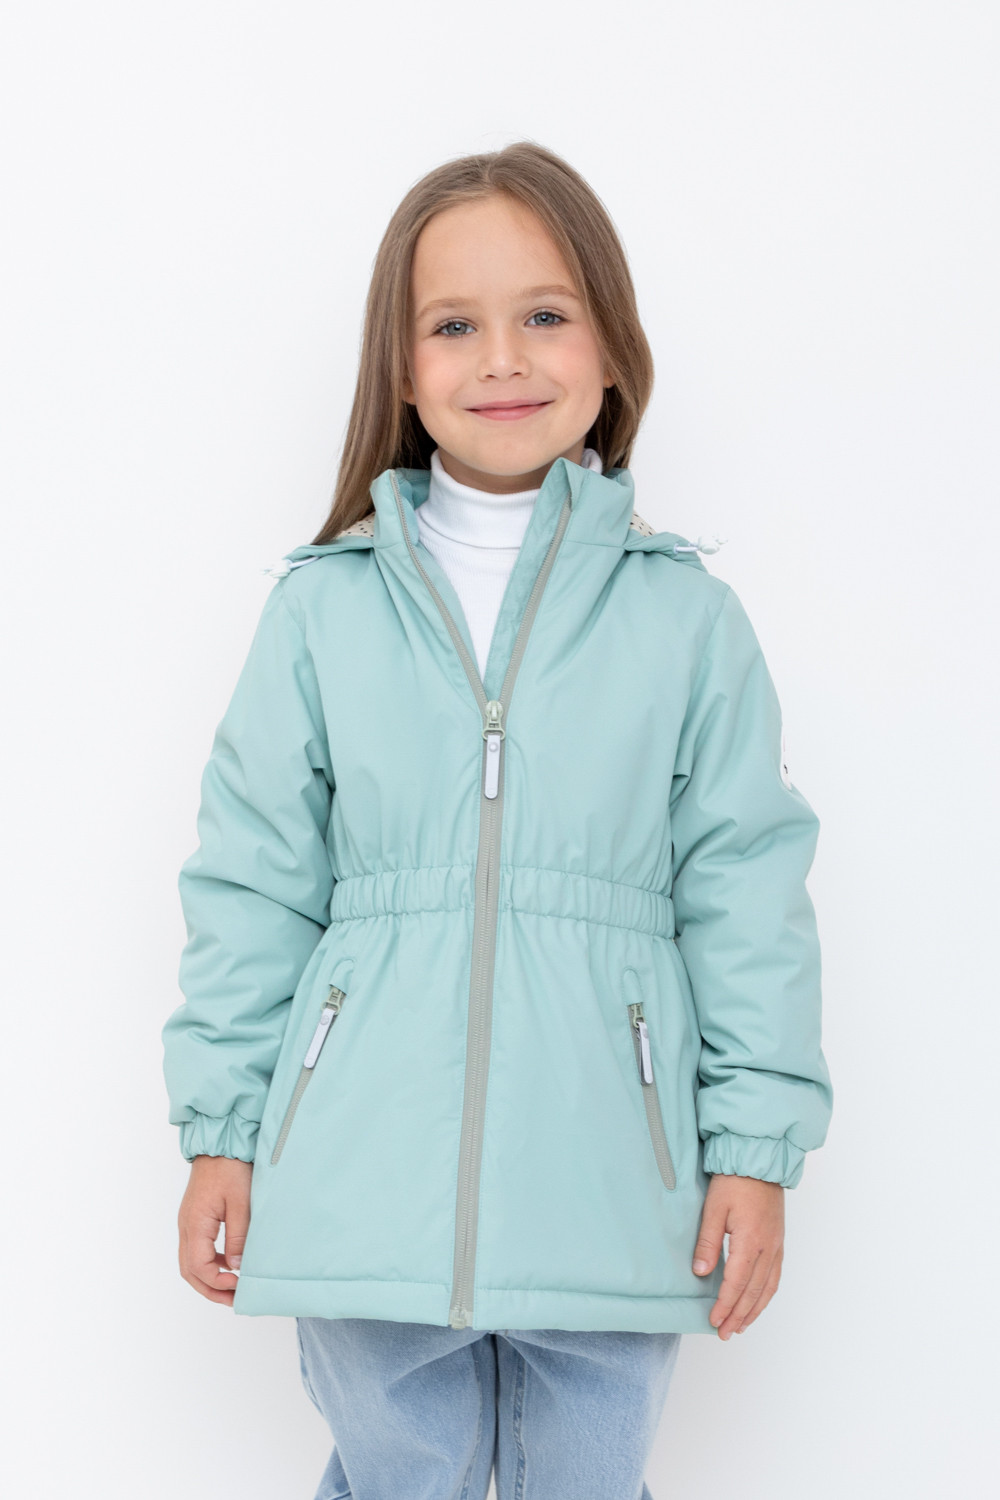 Куртка детская Crockid 1G JKT 024 4 1, голубой прибой, 110